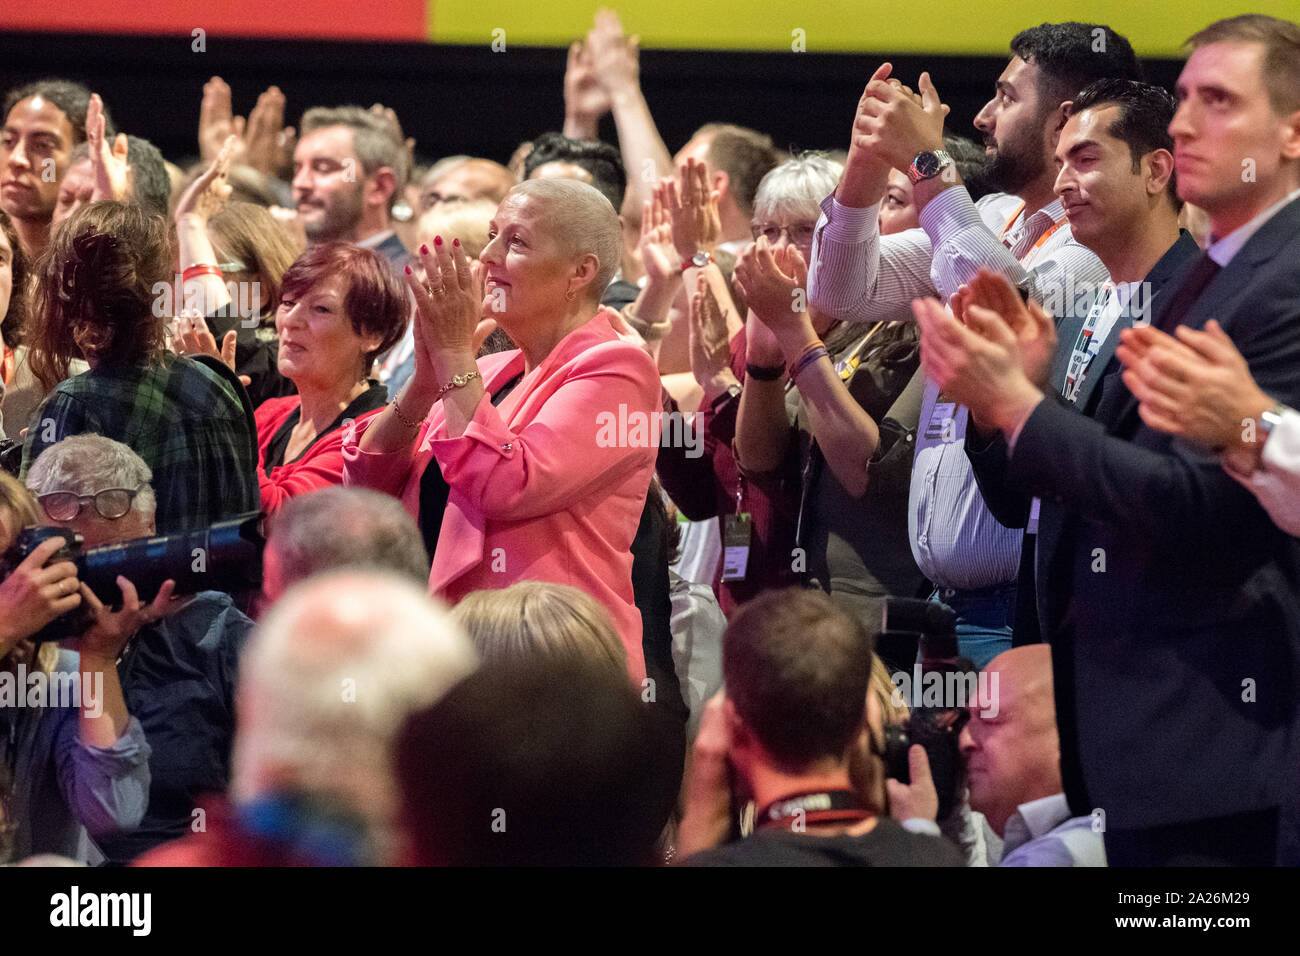 Les membres du Parti du travail et les délégués applaudir, applaudir et donner une ovation debout à la conférence annuelle 2019, Brighton, UK. Banque D'Images